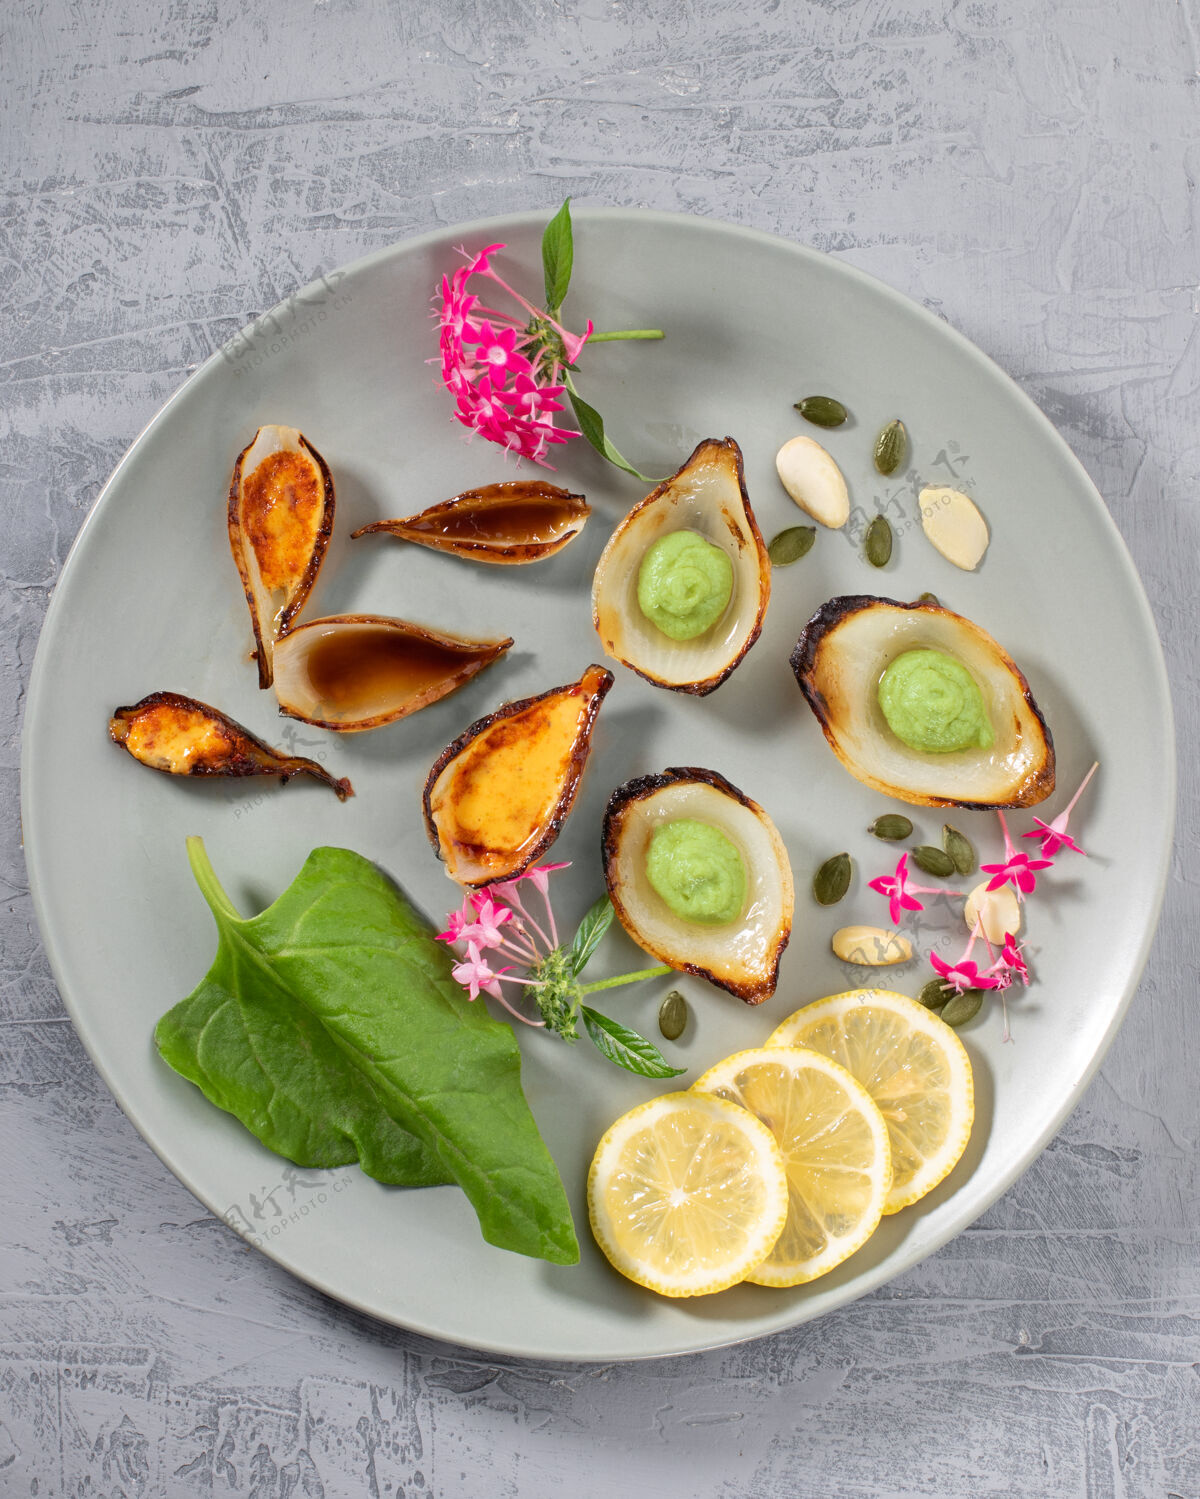 生的五彩缤纷的美食艺术组合在盘子上 配以蔬菜和蔬菜叶子.顶查看柠檬厨房健康